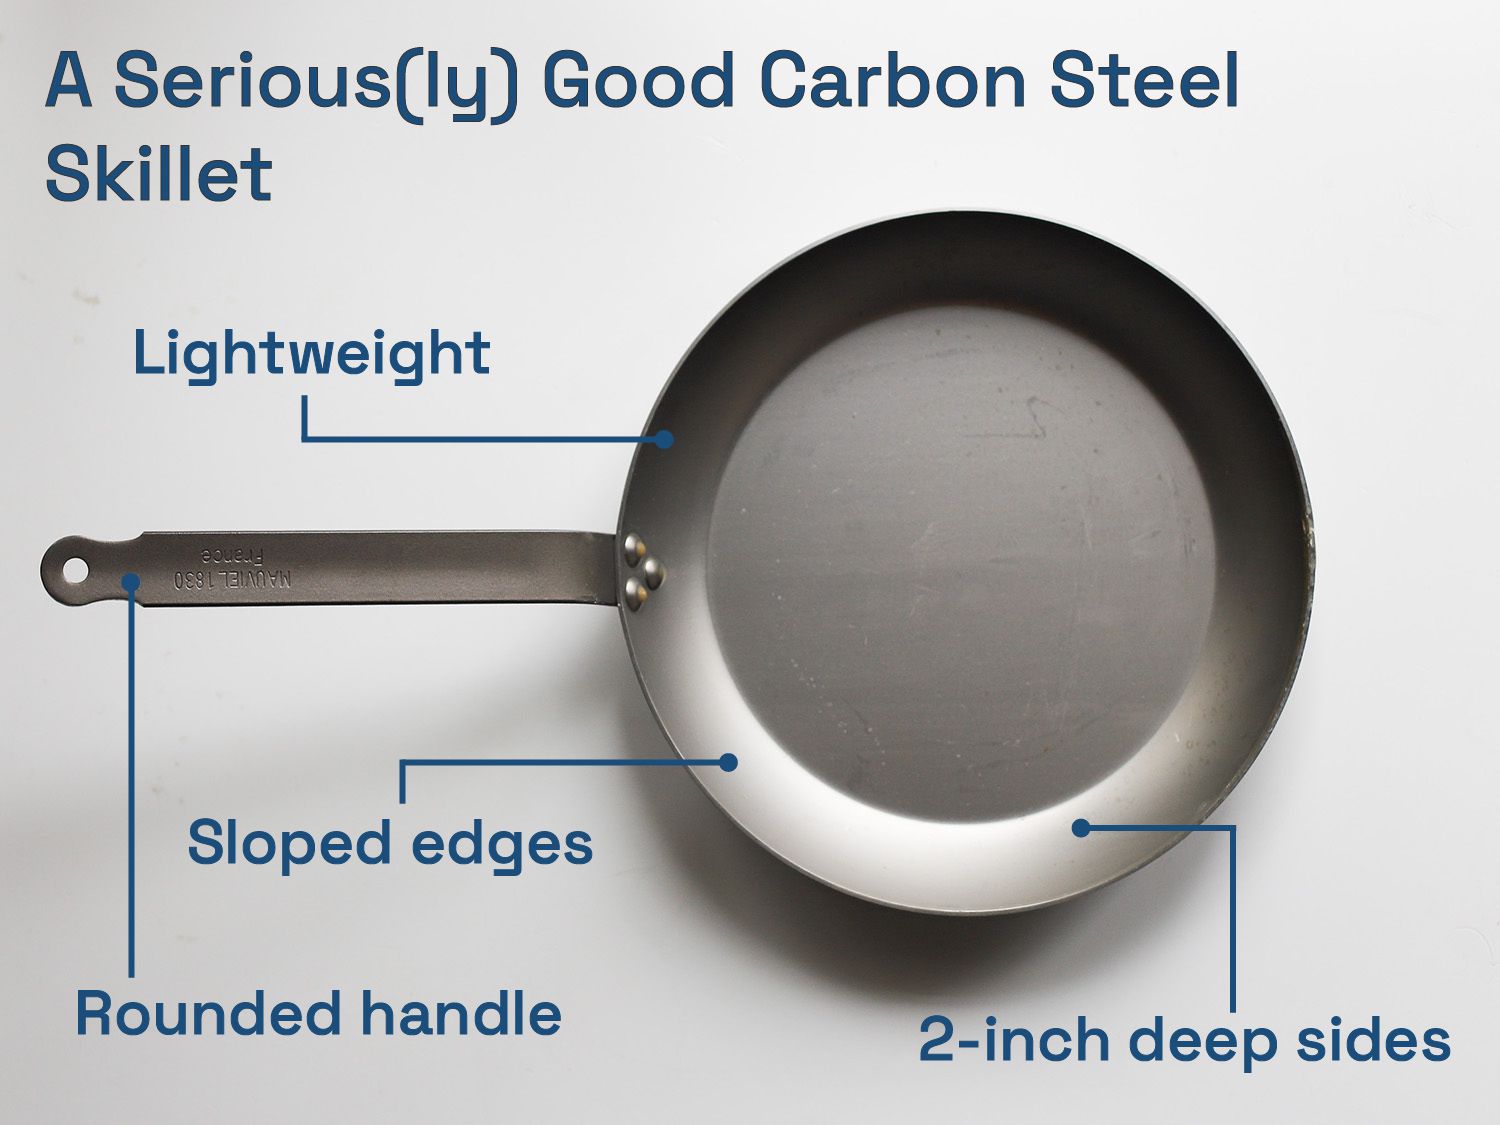 认真好碳钢锅:轻量级,倾斜的边缘,圆角处理,2英寸深。